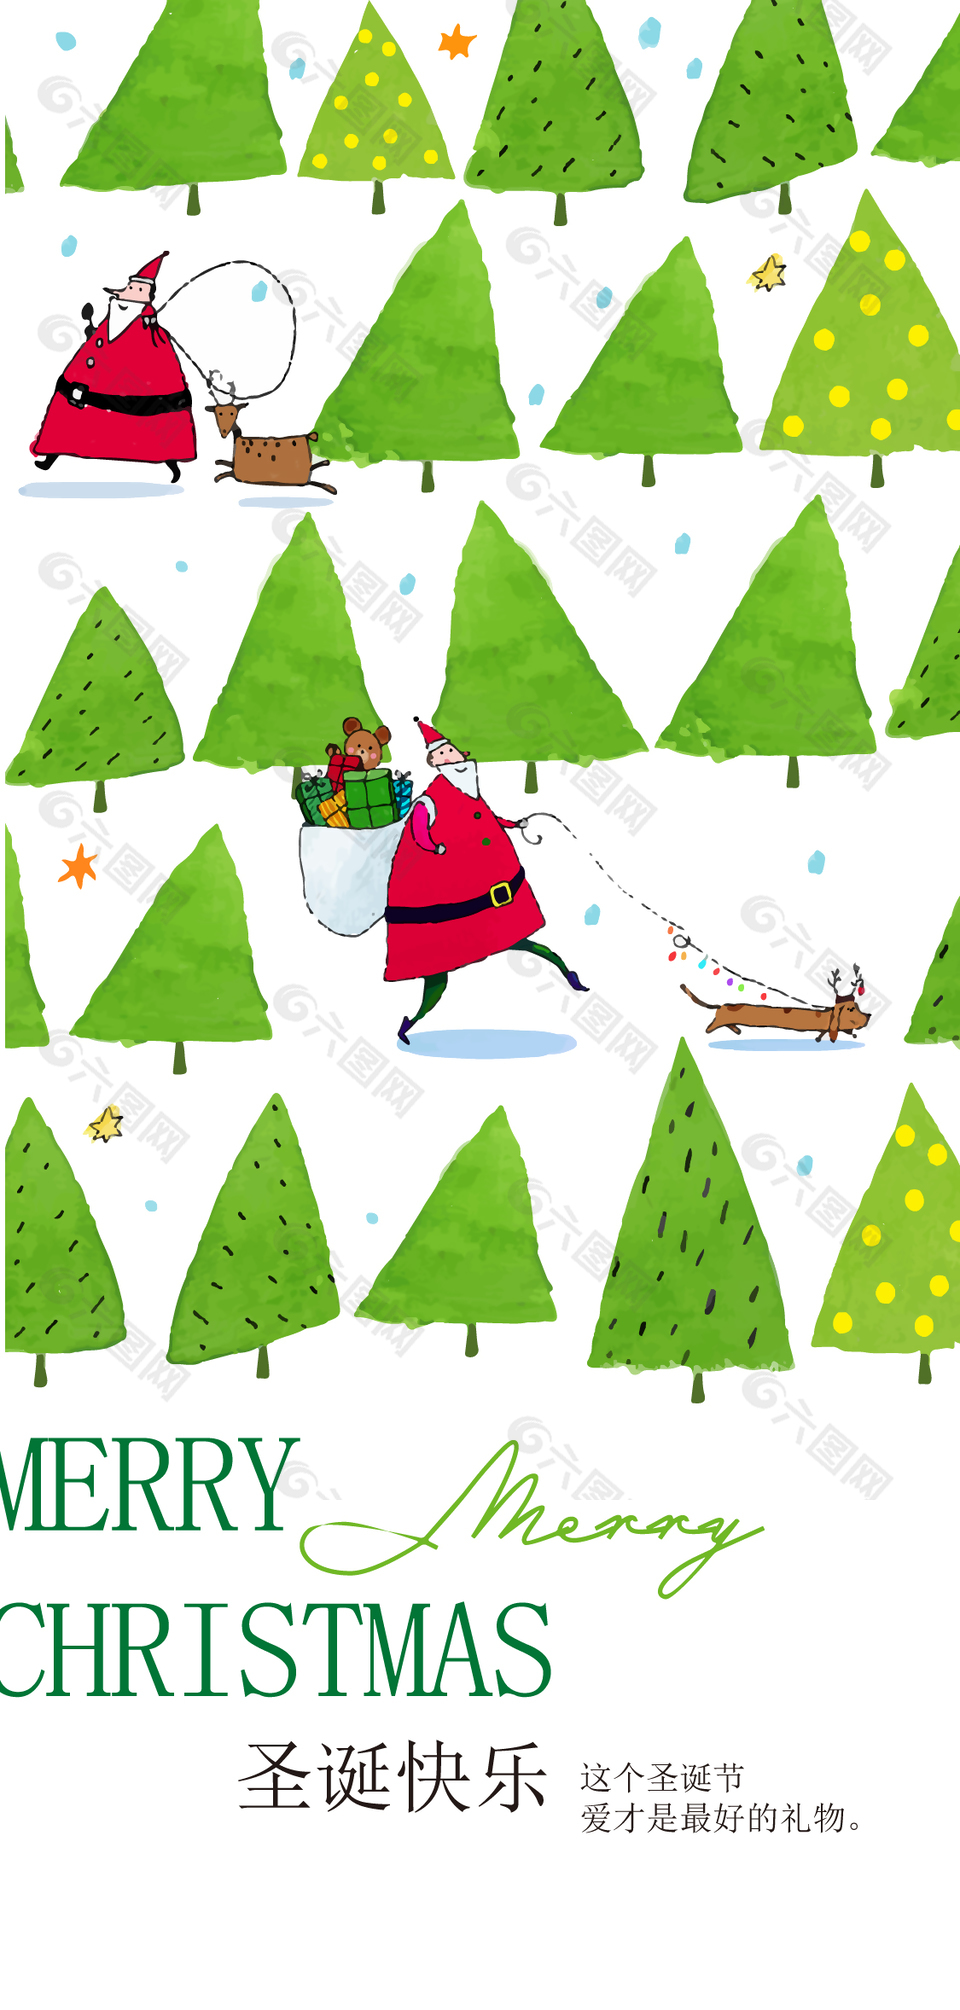 圣诞快乐简约手绘圣诞树插画海报素材